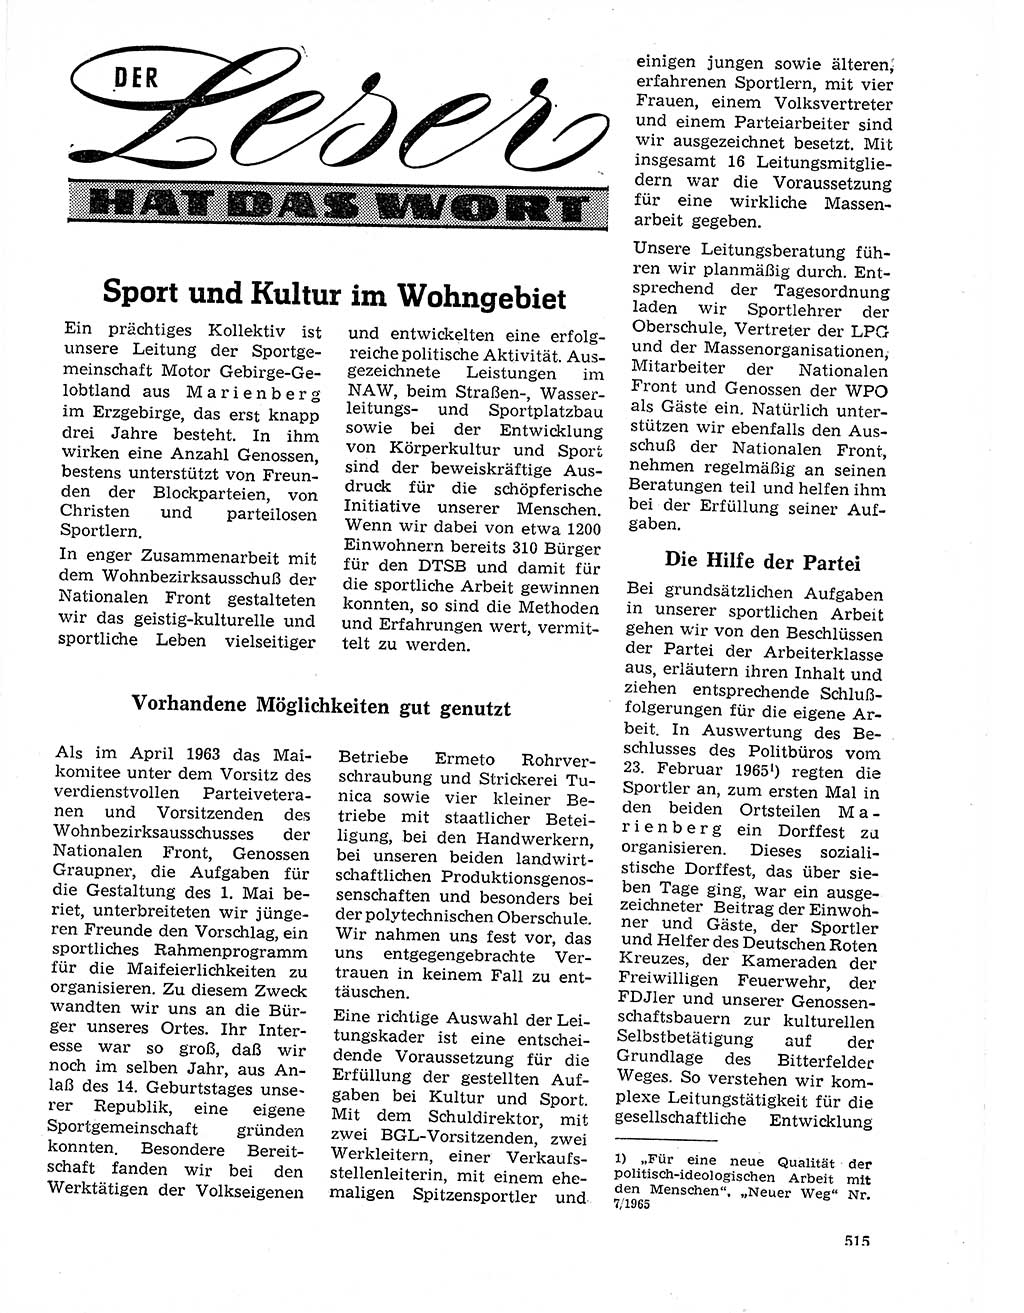 Neuer Weg (NW), Organ des Zentralkomitees (ZK) der SED (Sozialistische Einheitspartei Deutschlands) für Fragen des Parteilebens, 21. Jahrgang [Deutsche Demokratische Republik (DDR)] 1966, Seite 515 (NW ZK SED DDR 1966, S. 515)